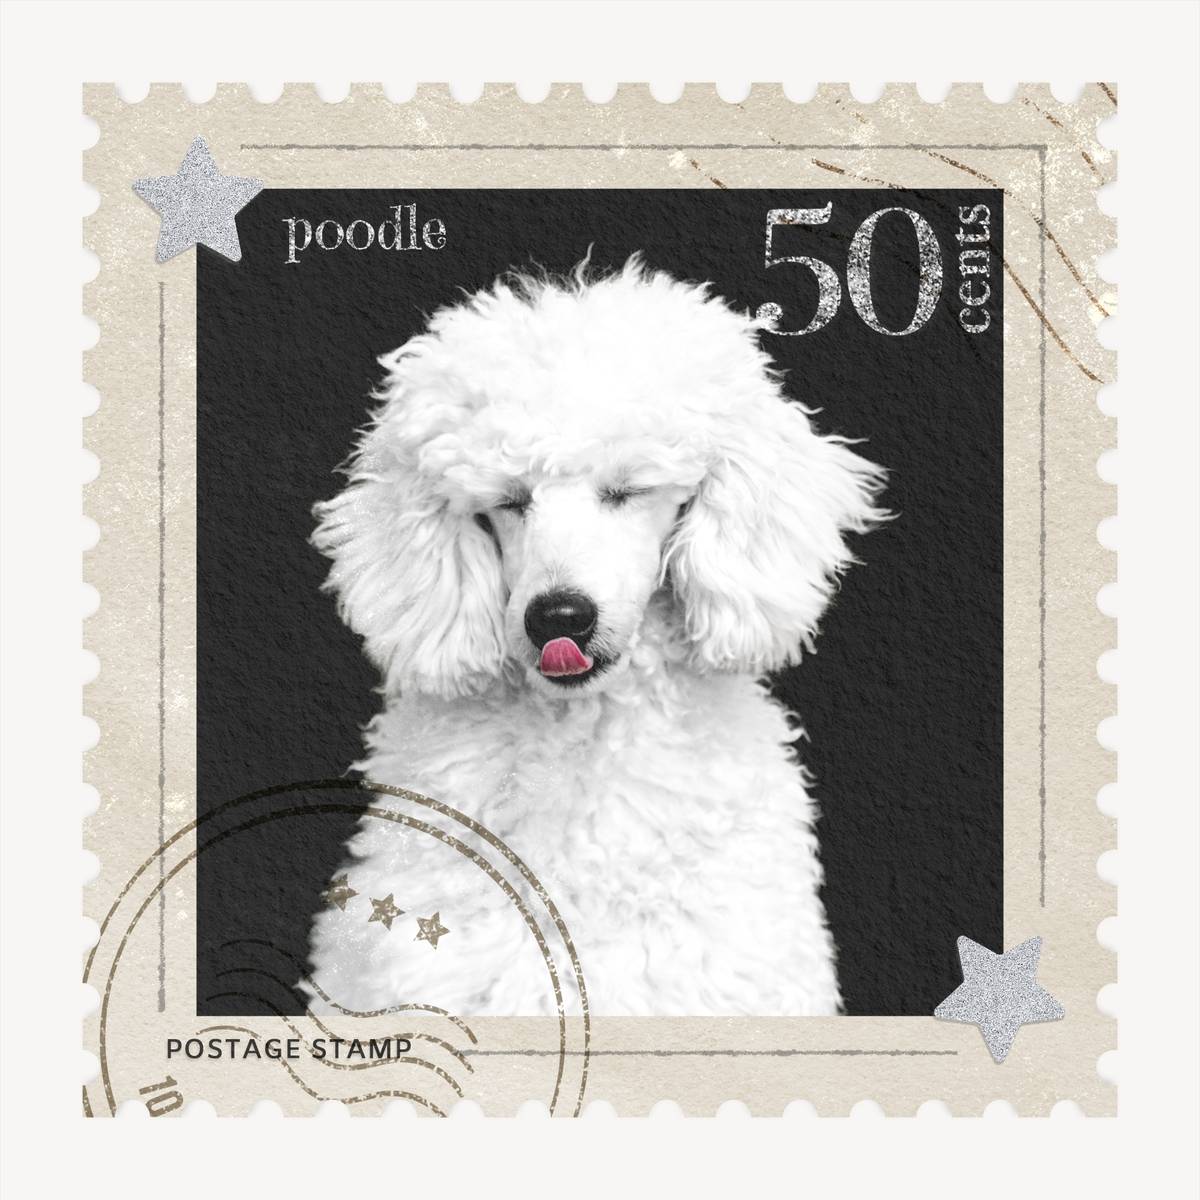 Poodle postage stamp